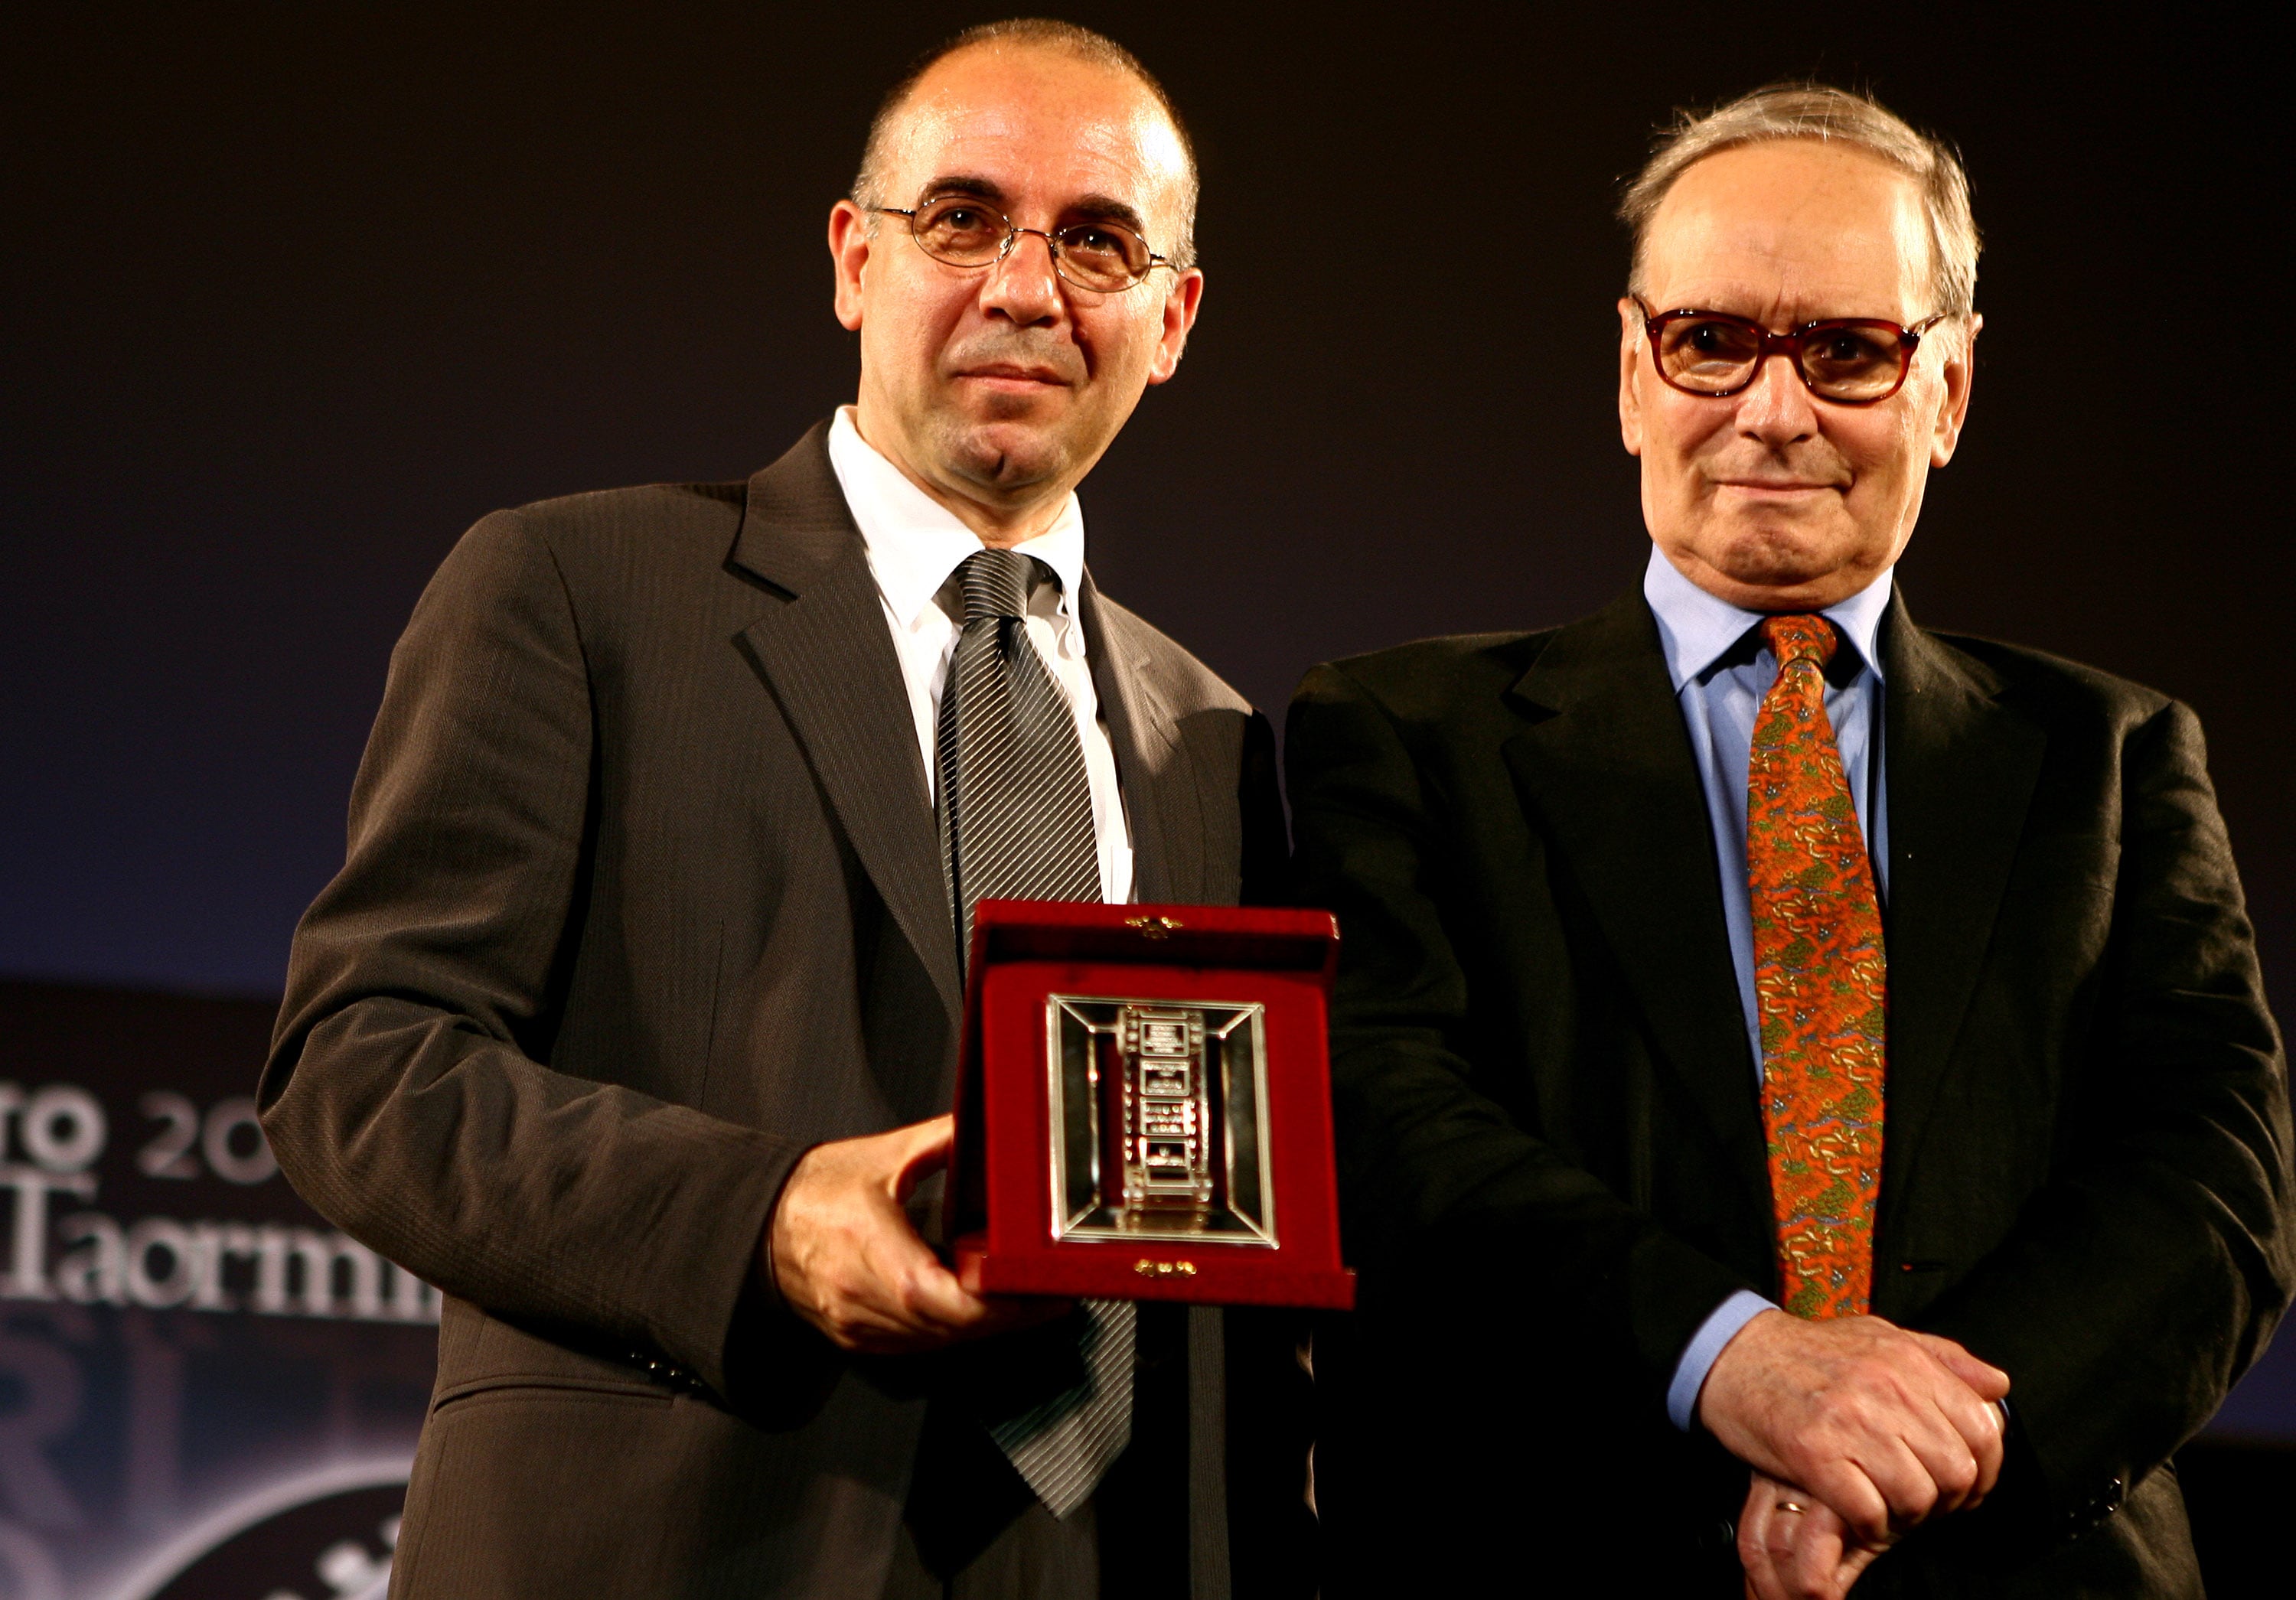 Nastro d'Argento 2007. Giuseppe Tornatore vince come regista del miglior film italiano per "La sconosciuta". Accanto a lui il compositore Ennio Morricone